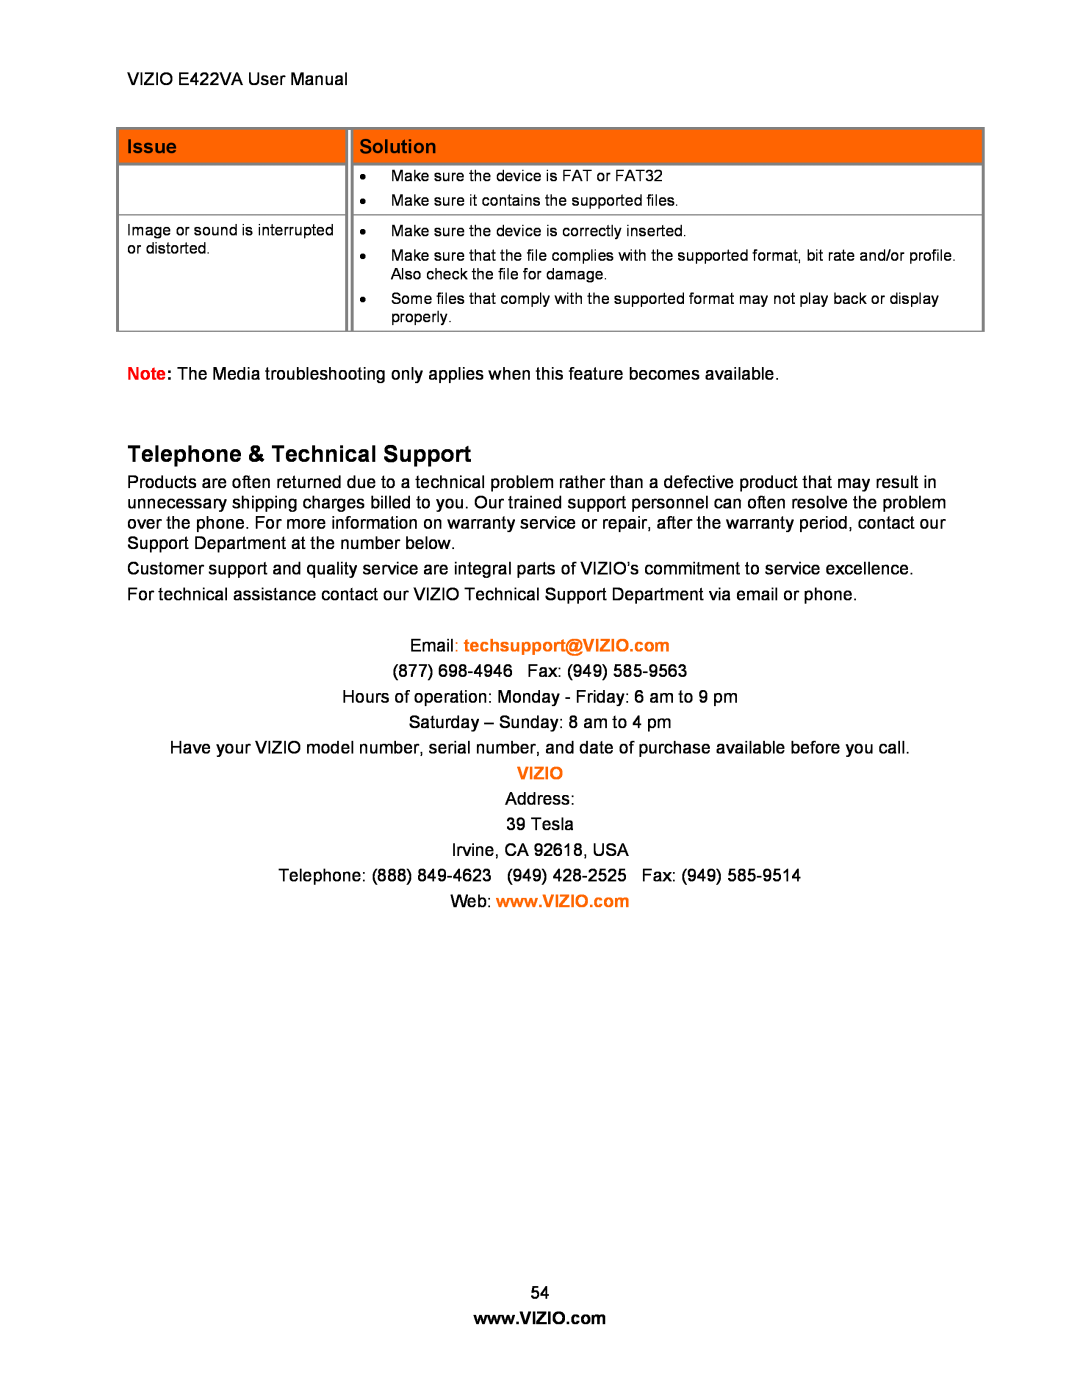 Xerox E422VA user manual Telephone & Technical Support, Email techsupport@VIZIO.com, Vizio, Issue, Solution 